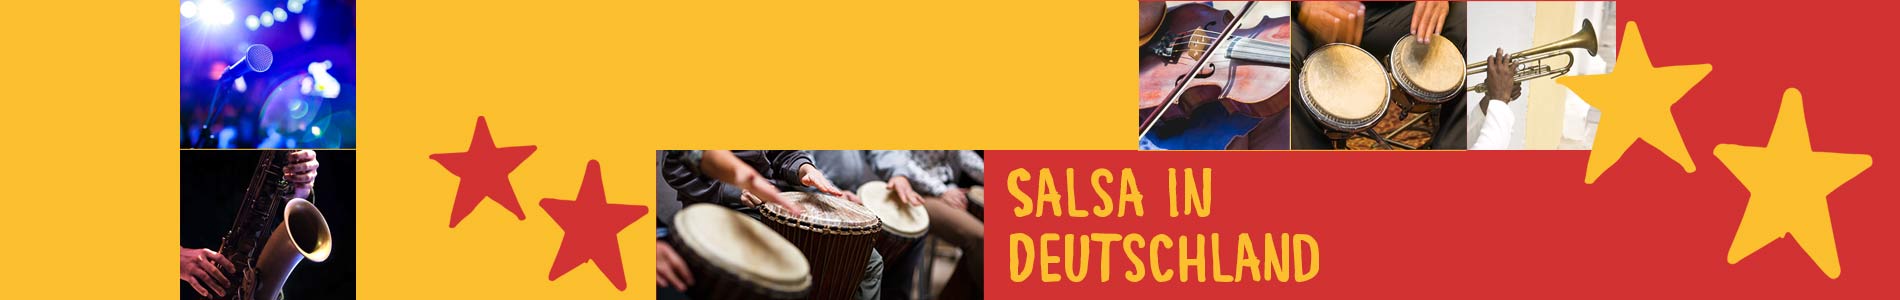 Salsa in Dargun – Salsa lernen und tanzen, Tanzkurse, Partys, Veranstaltungen